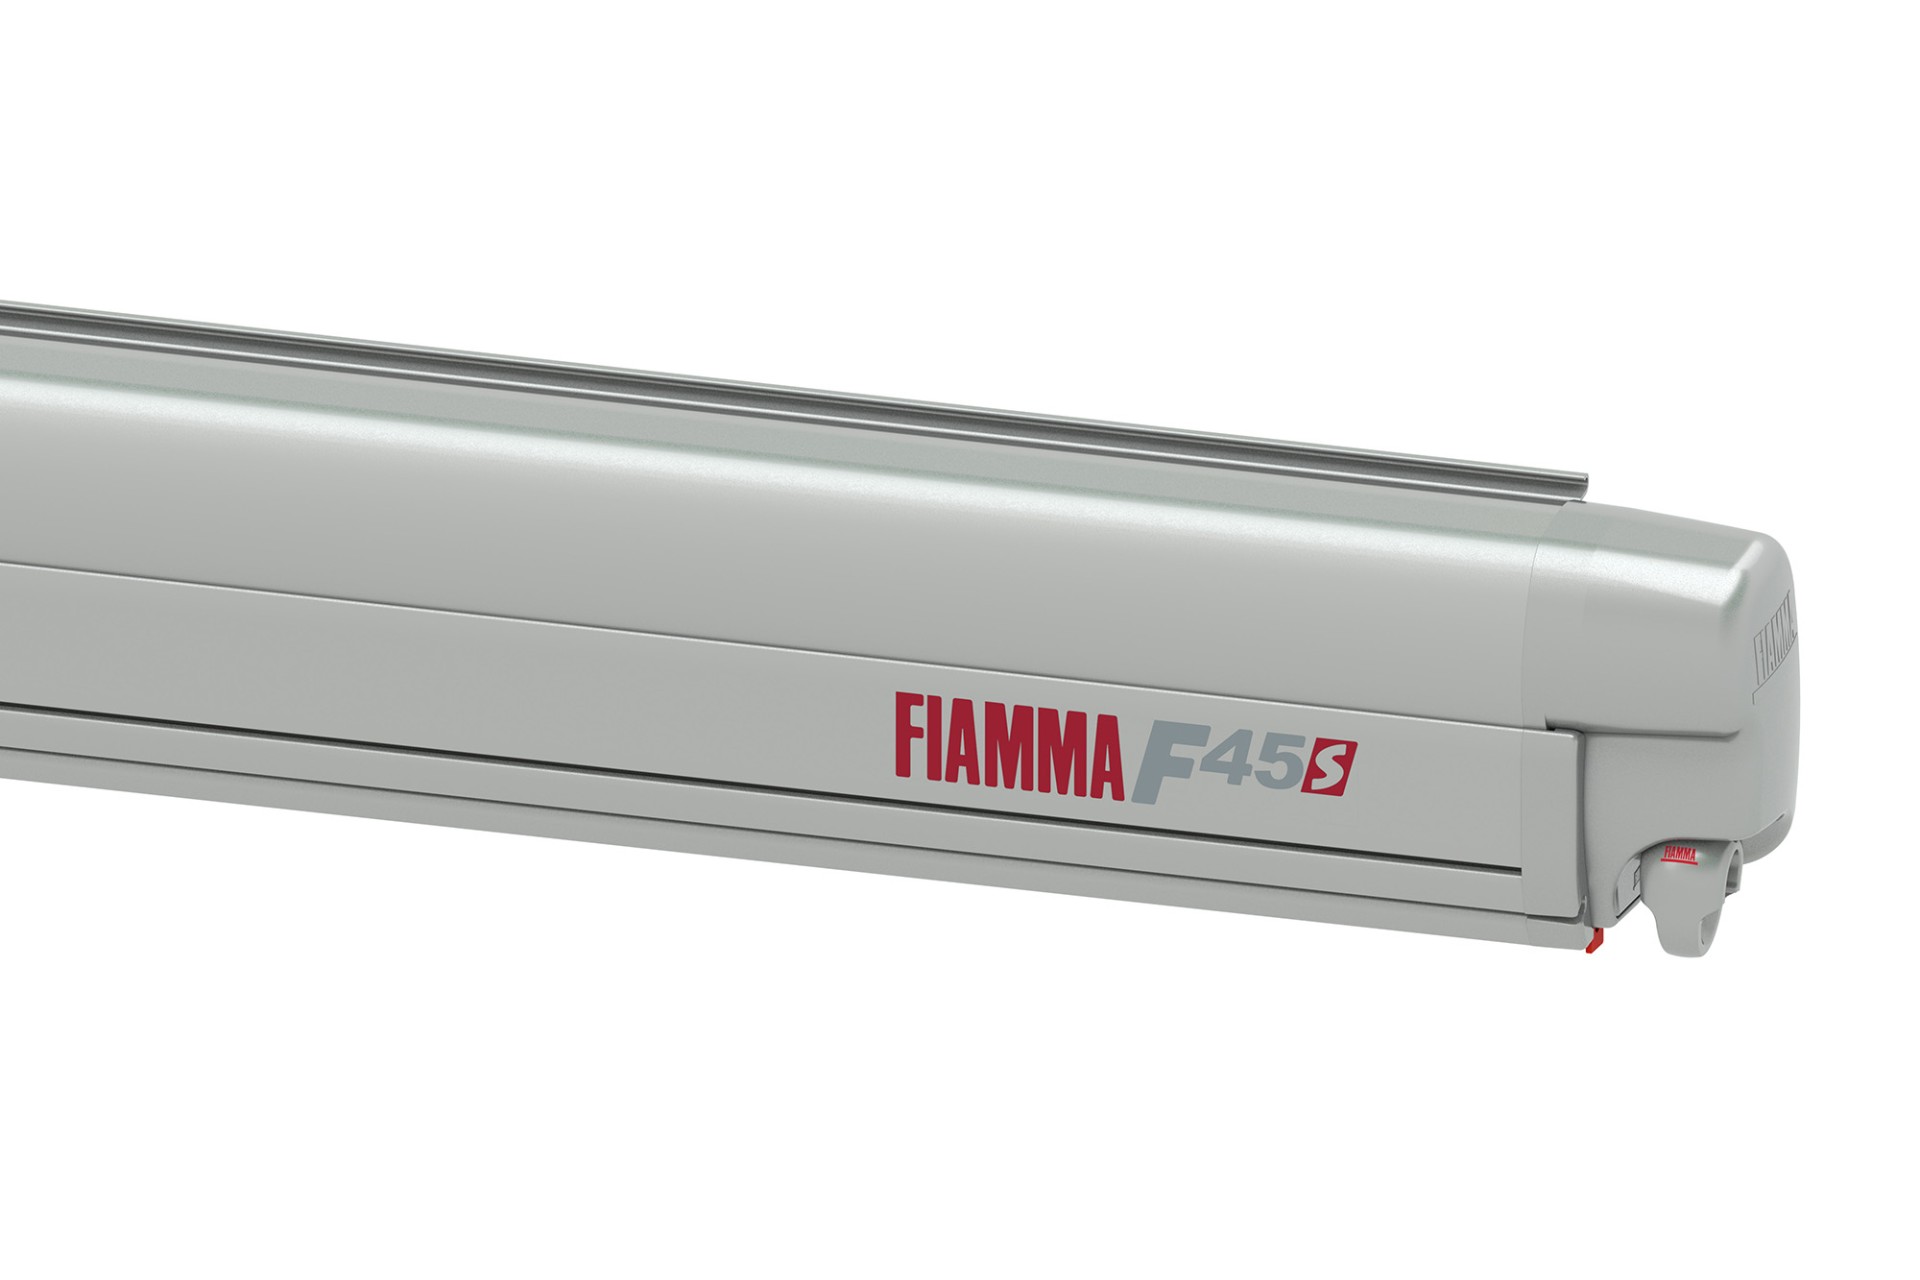 FIAMMA F45S tendalino camper - 260 alloggio titanio, Colore del panno Royal  Grey